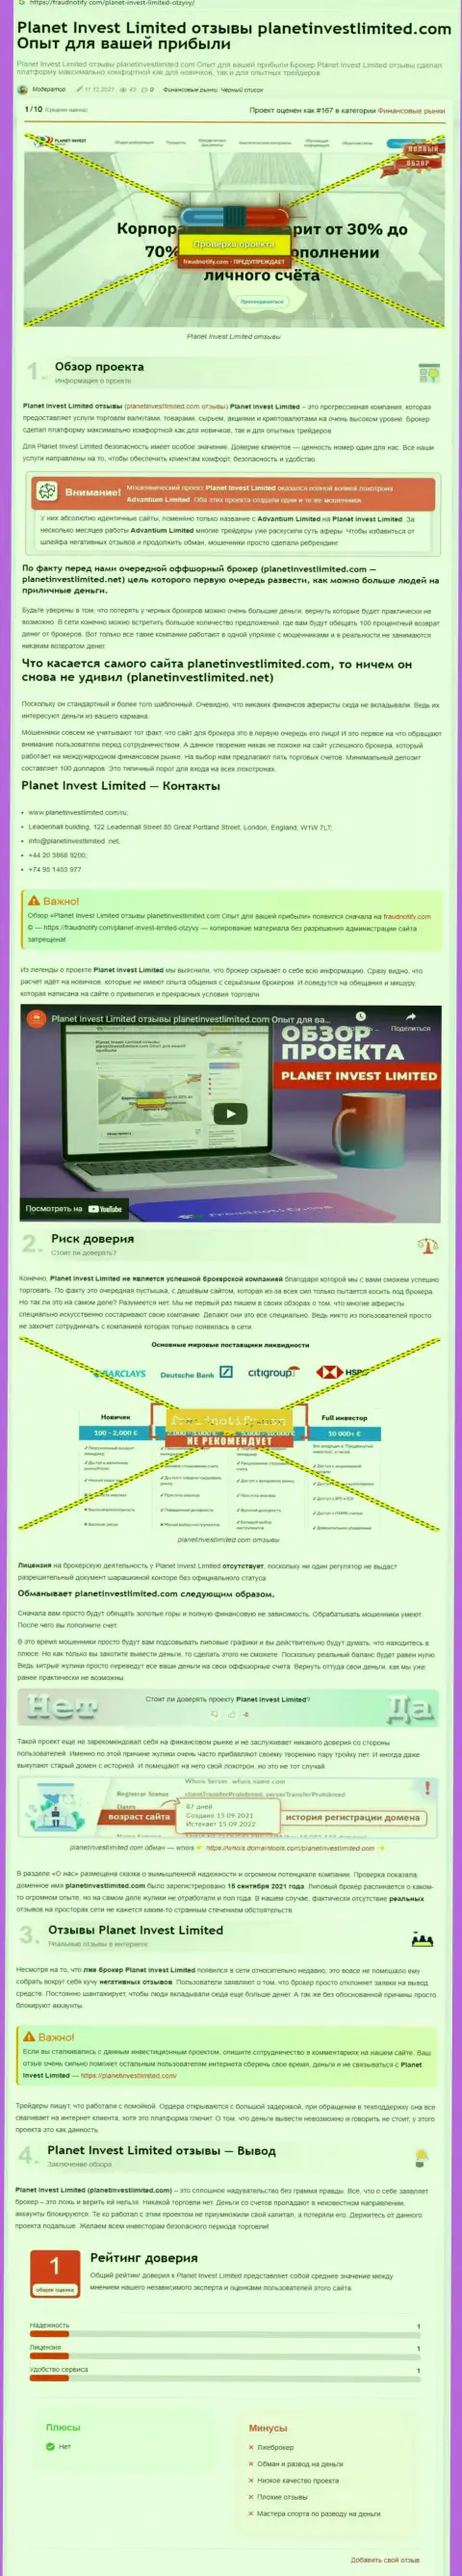 Обзор противозаконных деяний организации Planet Invest Limited, зарекомендовавшей себя, как internet-мошенника